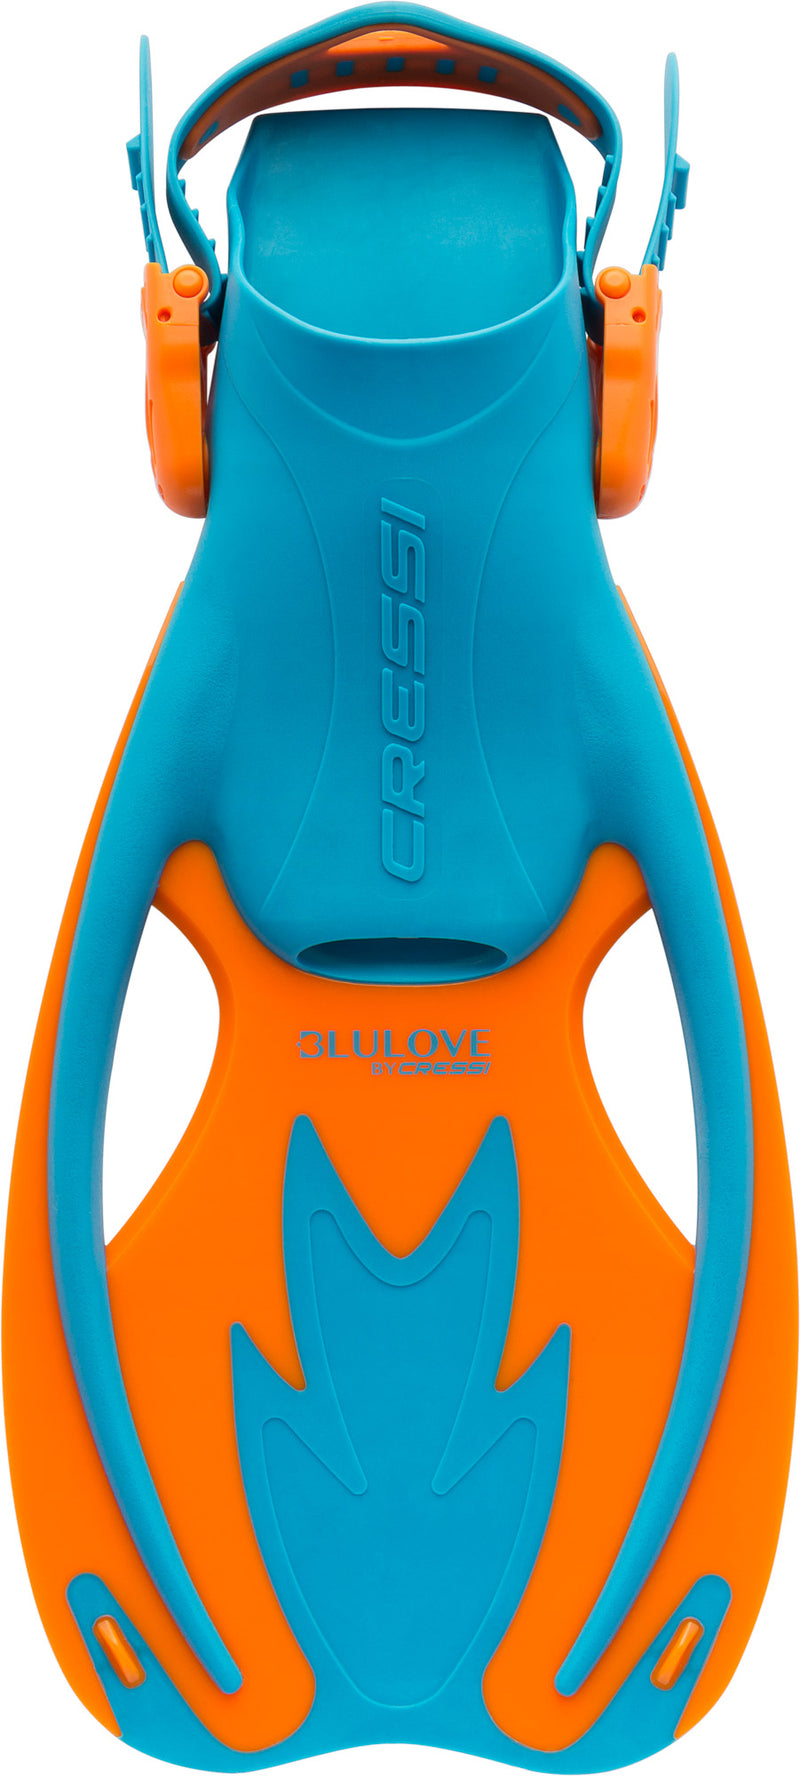 Cressi Junior Snorkeling Kit for Kids Ages 3 to 8 - Mask + Dry Snorkel + Adjustable Fins + Net Bag - Rocks Kids Set